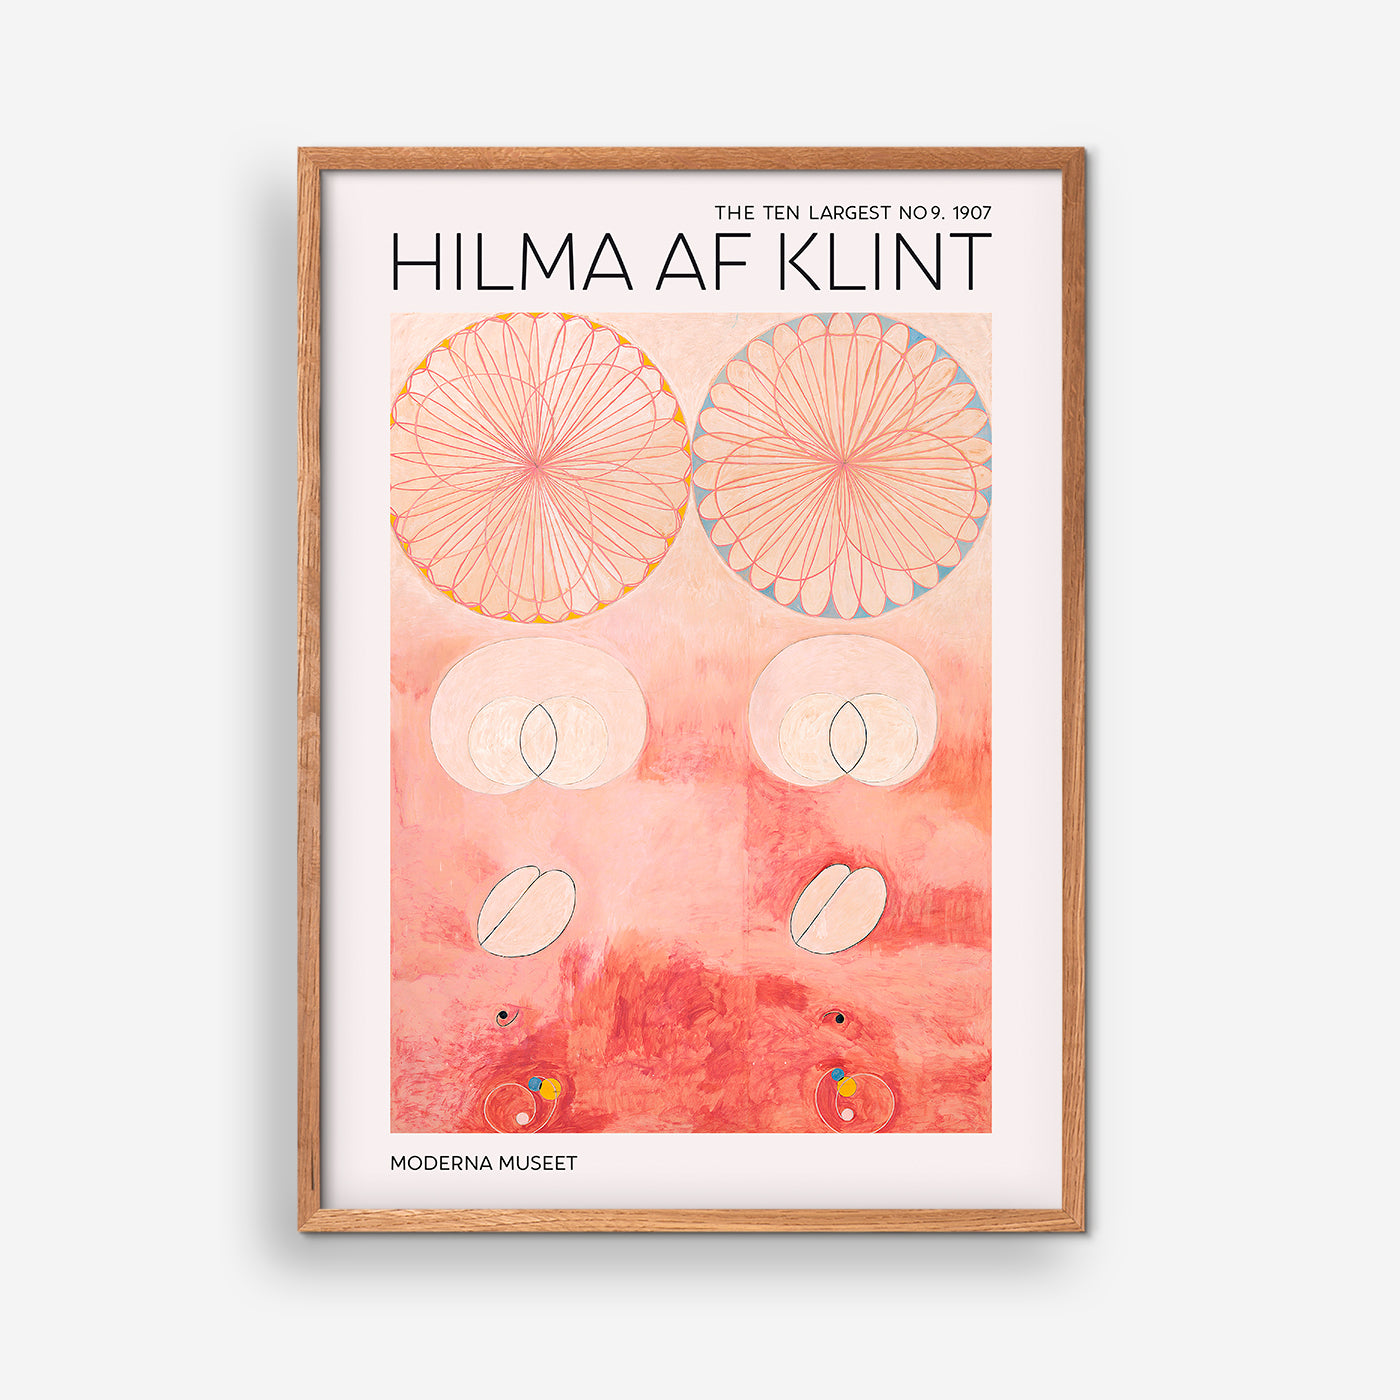 The Ten Largest NO. 9 - Hilma Of Klint